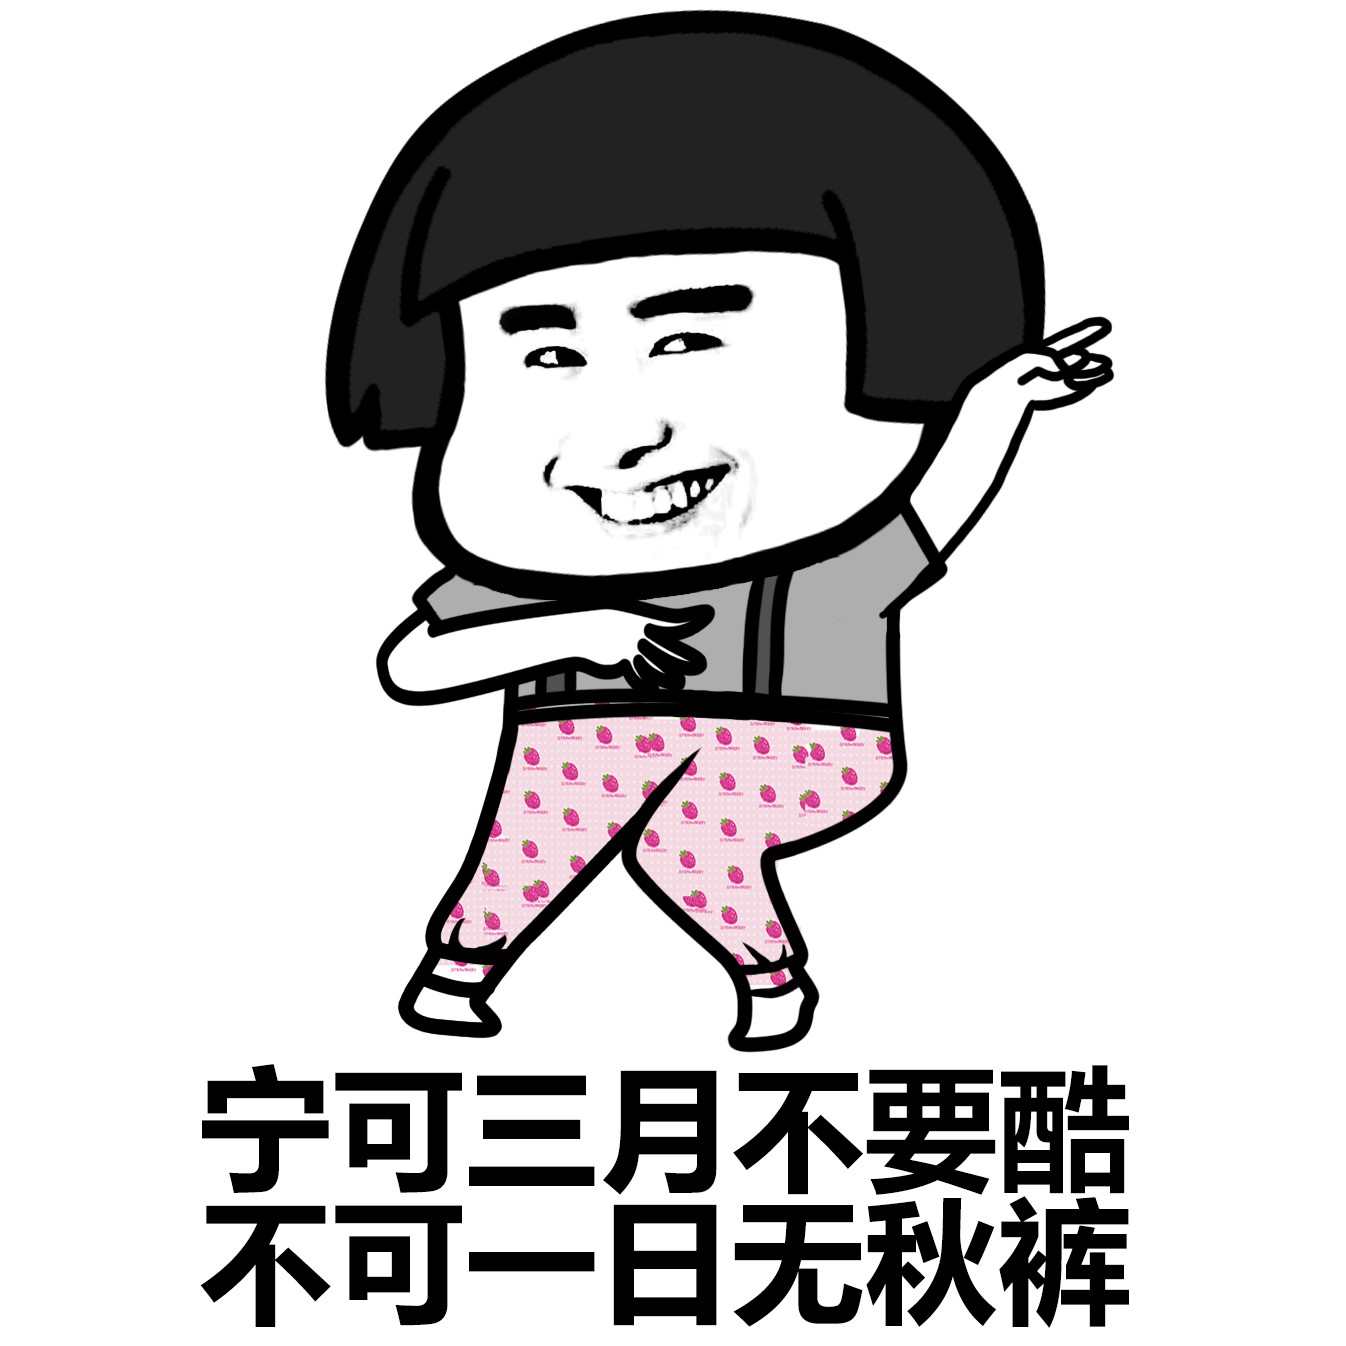 我要穿秋裤表情包-17 - DIY斗图表情 - diydoutu.com